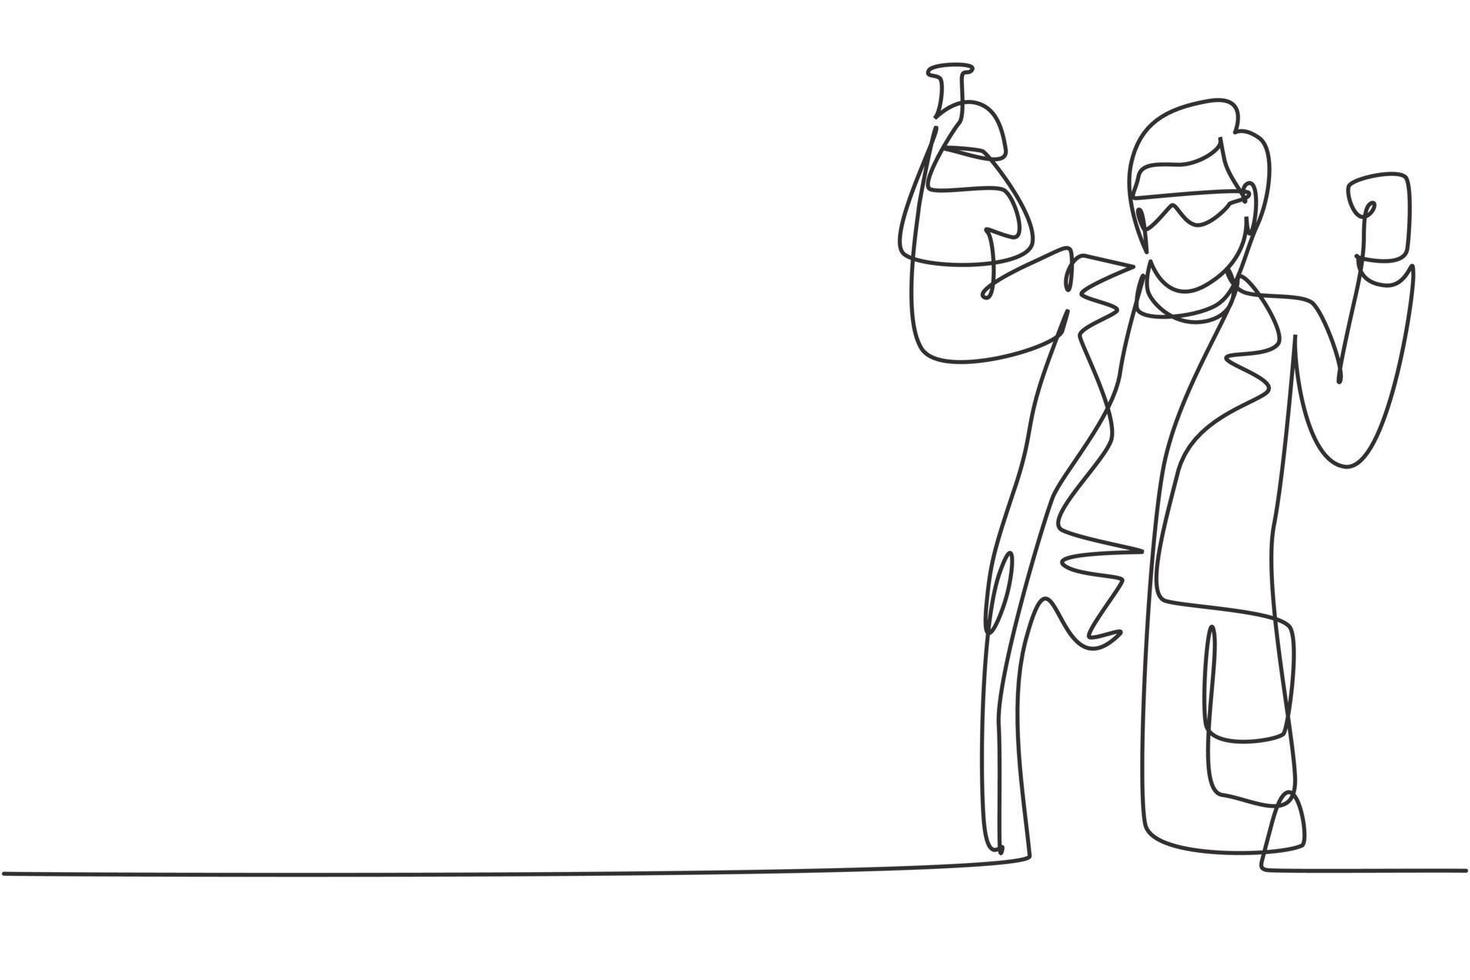 singolo scienziato che disegna una linea con un gesto celebrativo e tiene il tubo di misurazione per esaminare la soluzione chimica per fare il vaccino. illustrazione vettoriale grafica di disegno di disegno di linea continua moderna